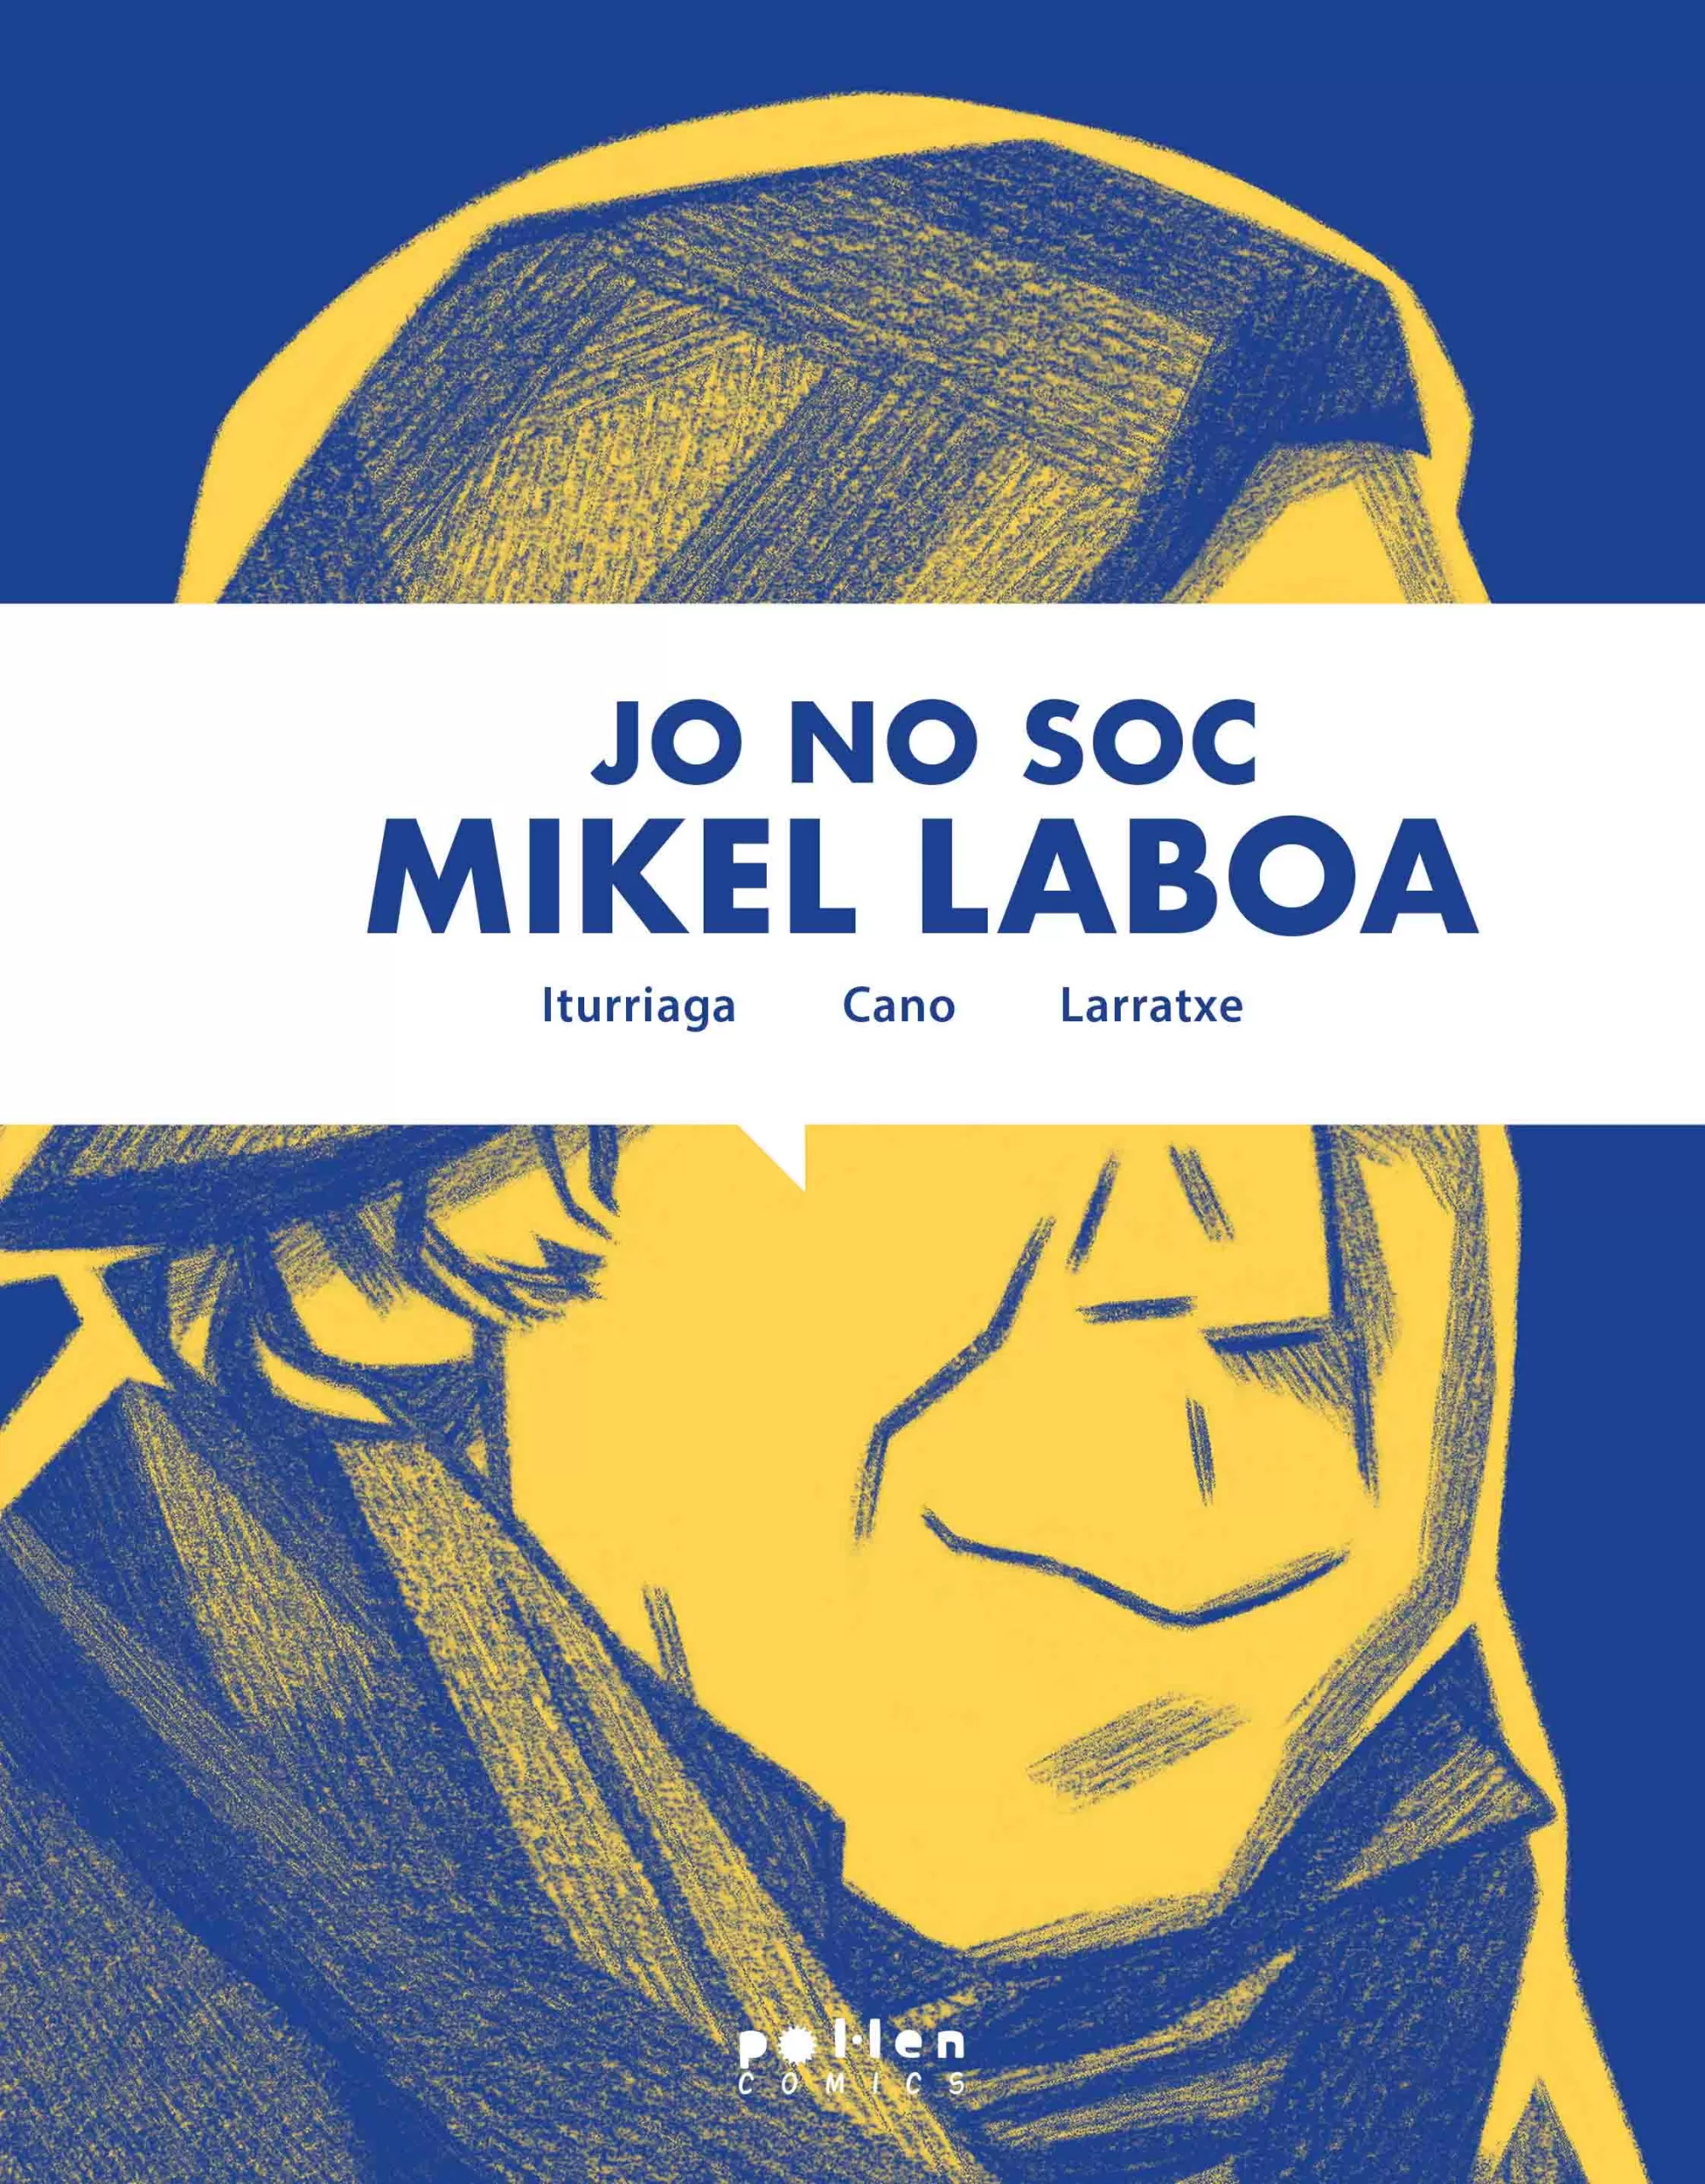 JO NO SOC MIKEL LABOA - Harkaitz Cano | Unai Iturriaga | Joseba Larratxe (Josevisky)